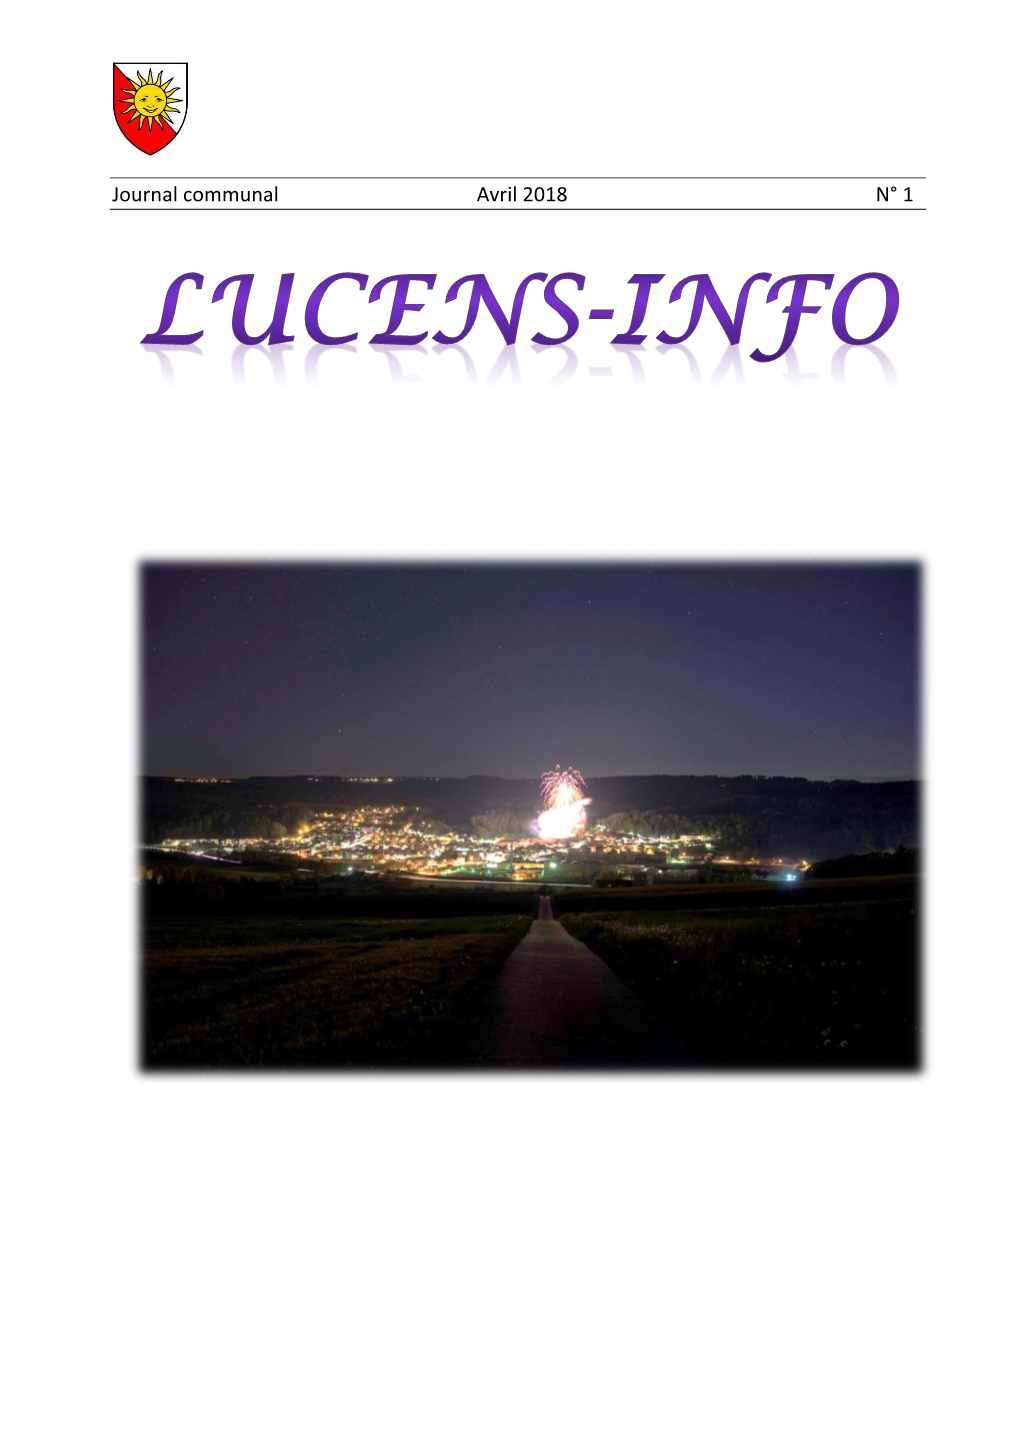 Lucens Info N° 5